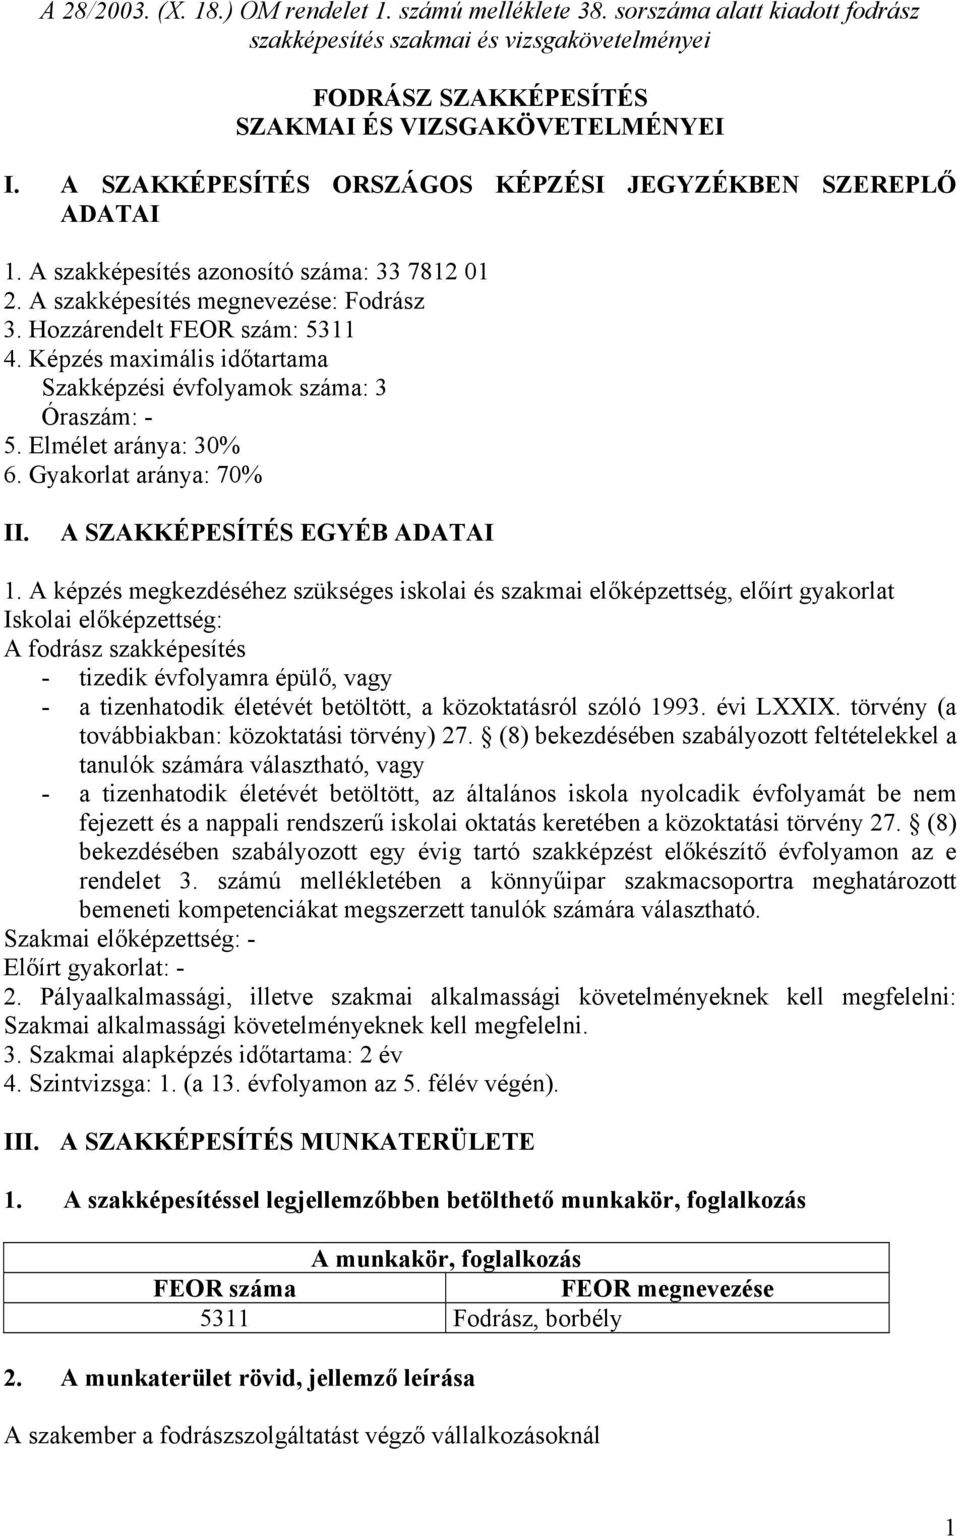 A 28/2003. (X. 18.) OM rendelet 1. számú melléklete 38. sorszáma alatt  kiadott fodrász szakképesítés szakmai és vizsgakövetelményei - PDF Ingyenes  letöltés